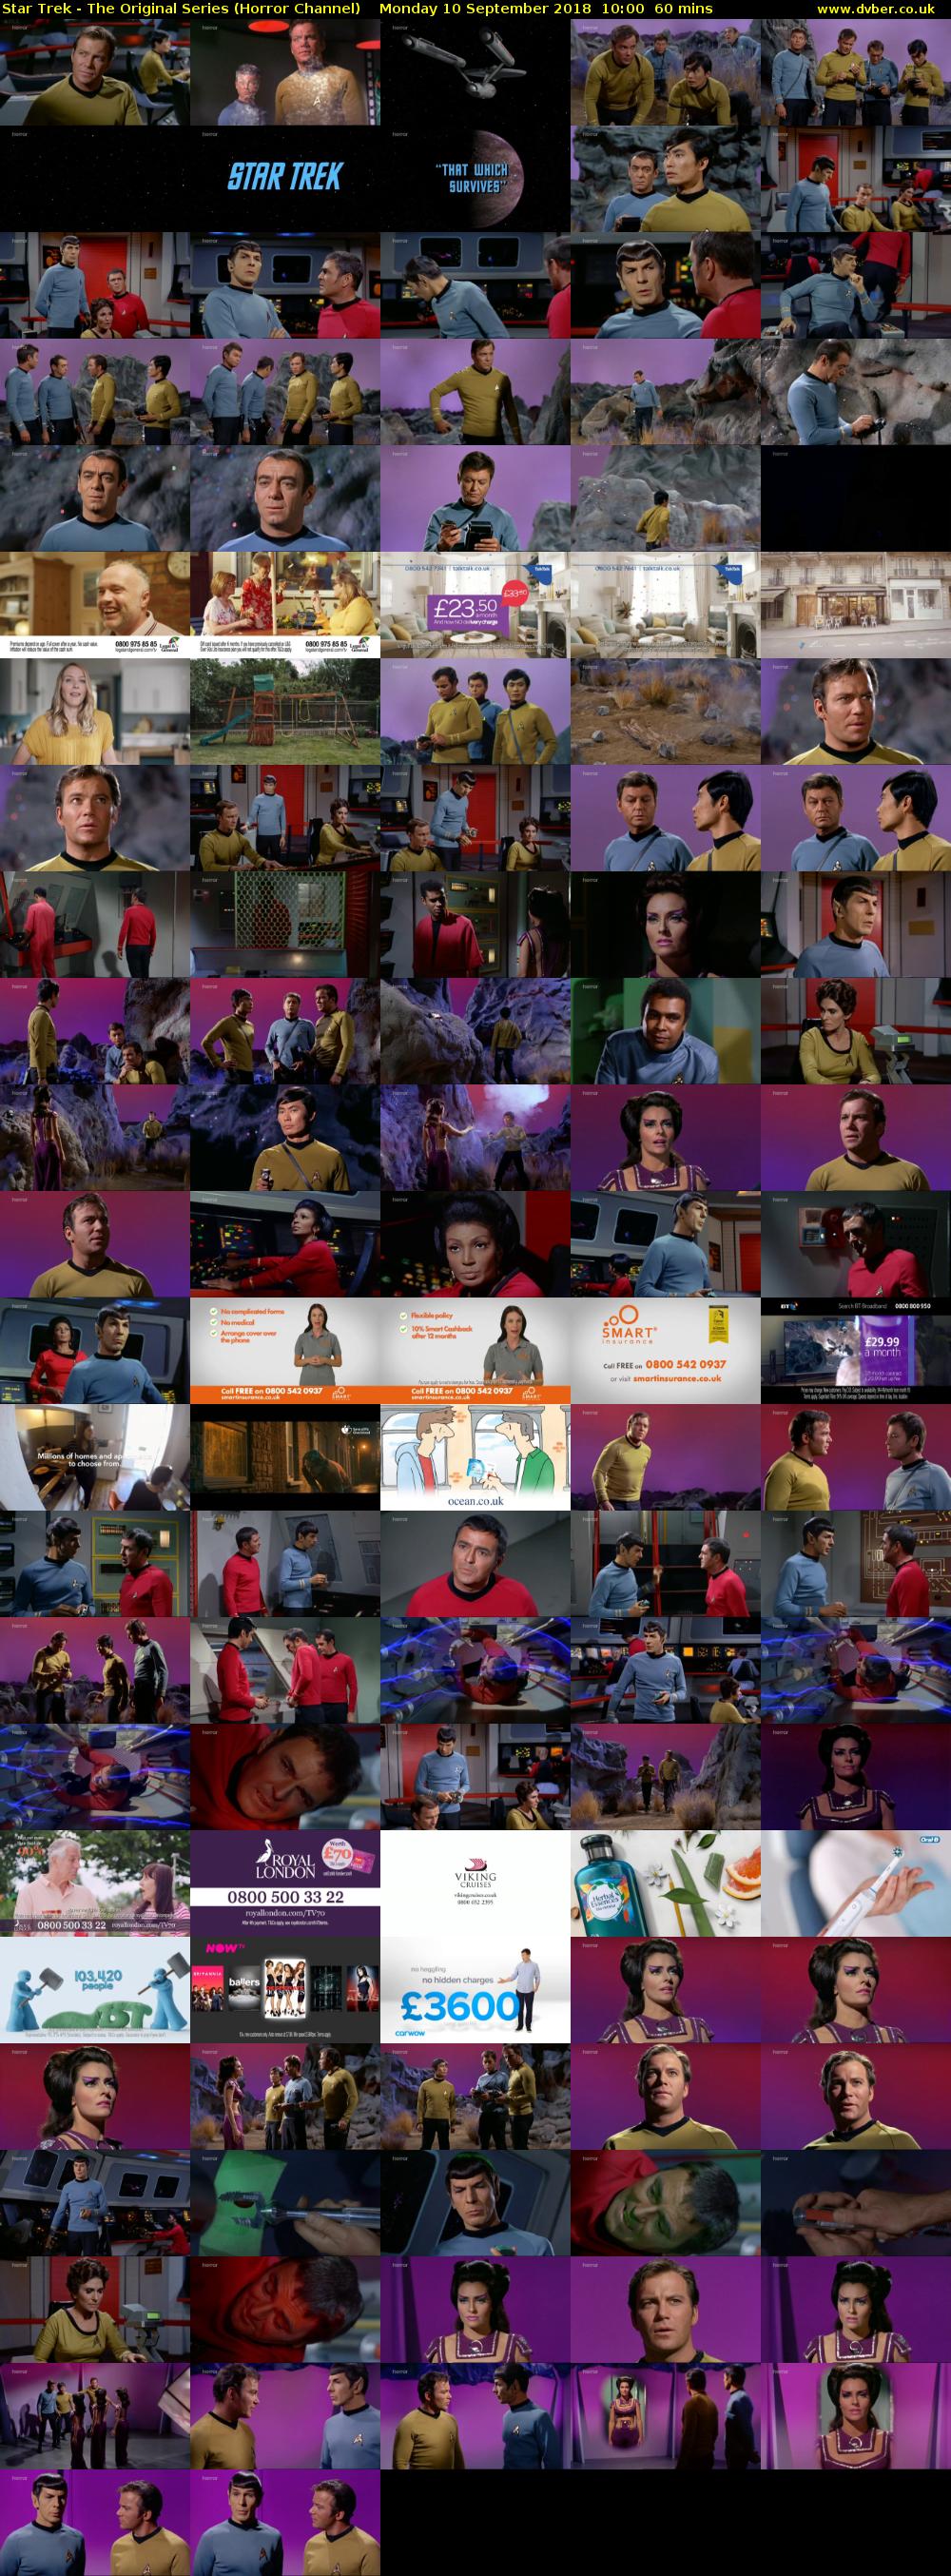 Star Trek - The Original Series (Horror Channel) Monday 10 September 2018 10:00 - 11:00